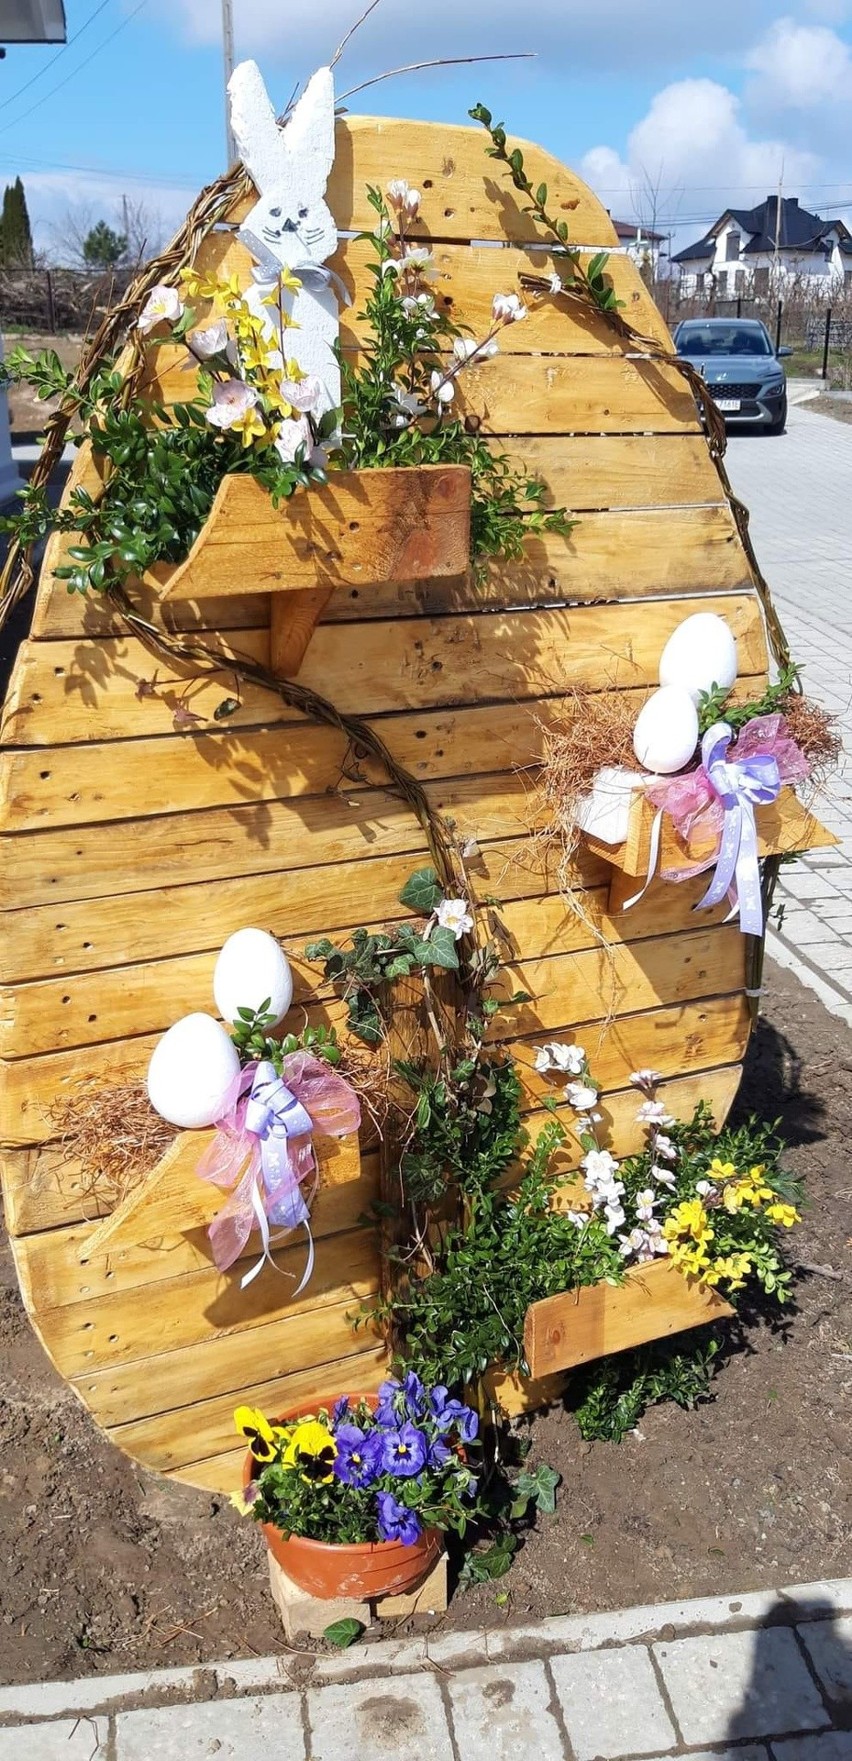 Piękne Jajko Wielkanocne stanęło w Łoniowie. Kto wykonał niezwykłą ozdobę? Zobacz zdjęcia